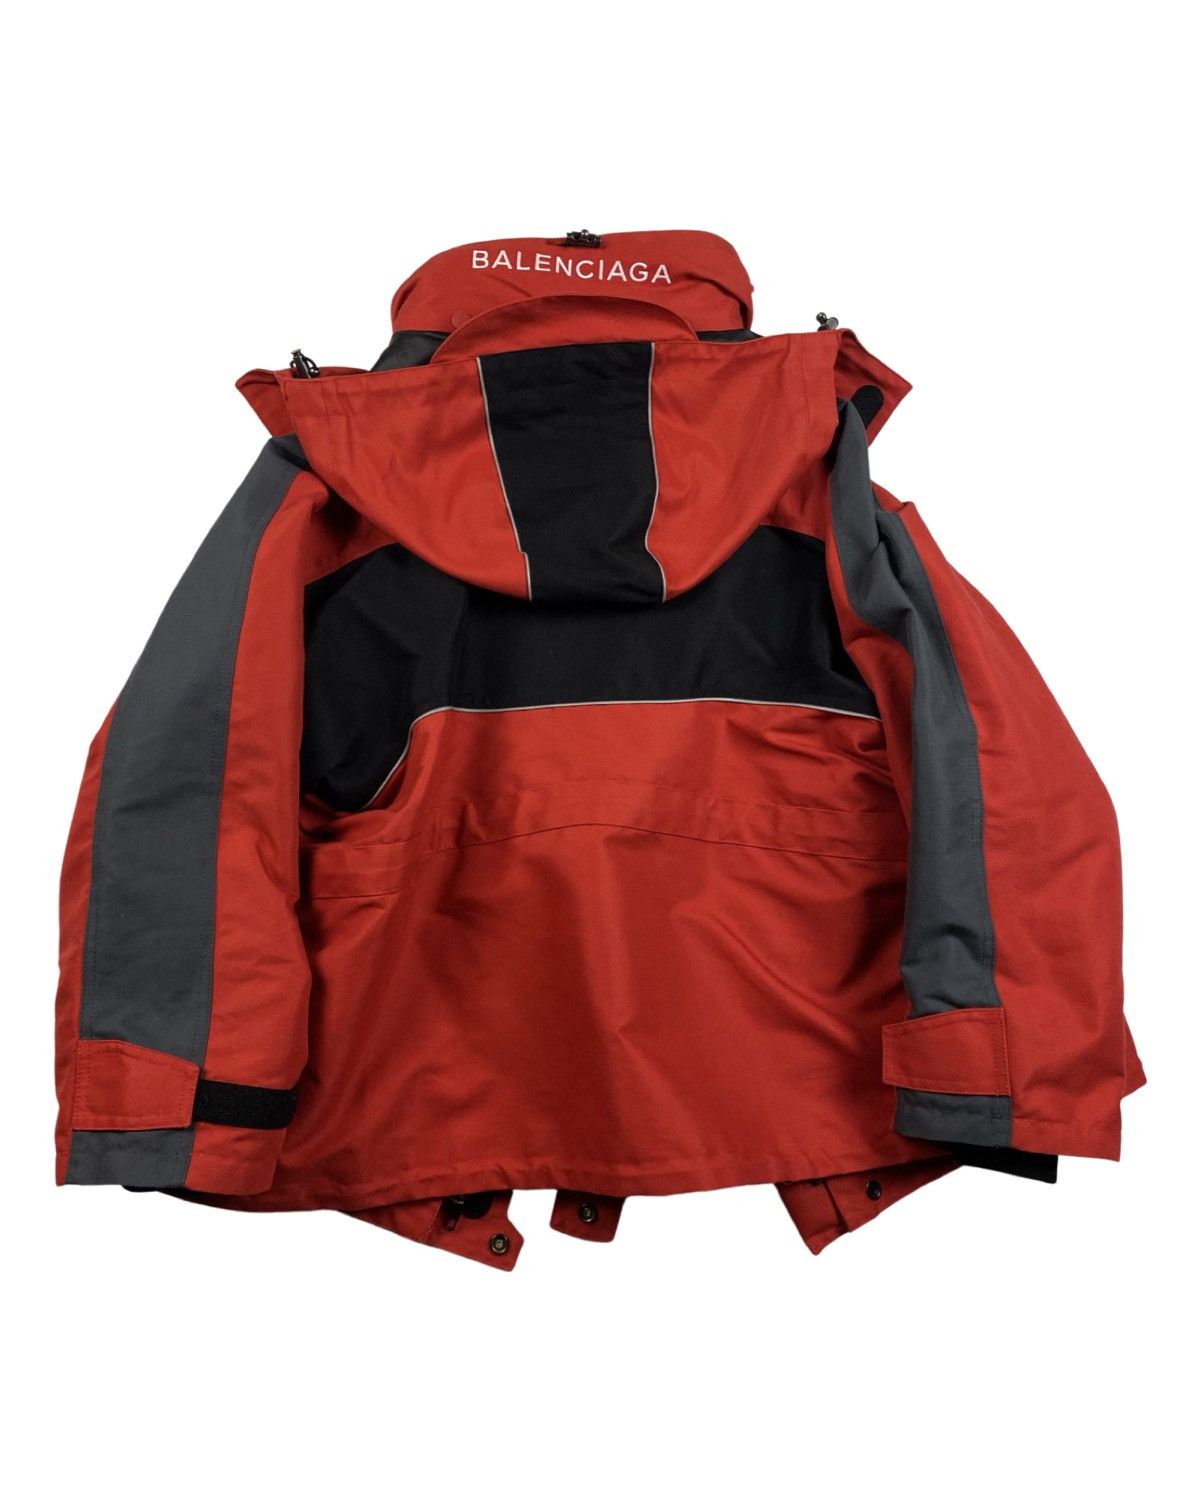 samvittighed sagde Jeg har erkendt det Balenciaga BRAND NEW Red & Black Swing Parka / ski Parka jacket | Grailed